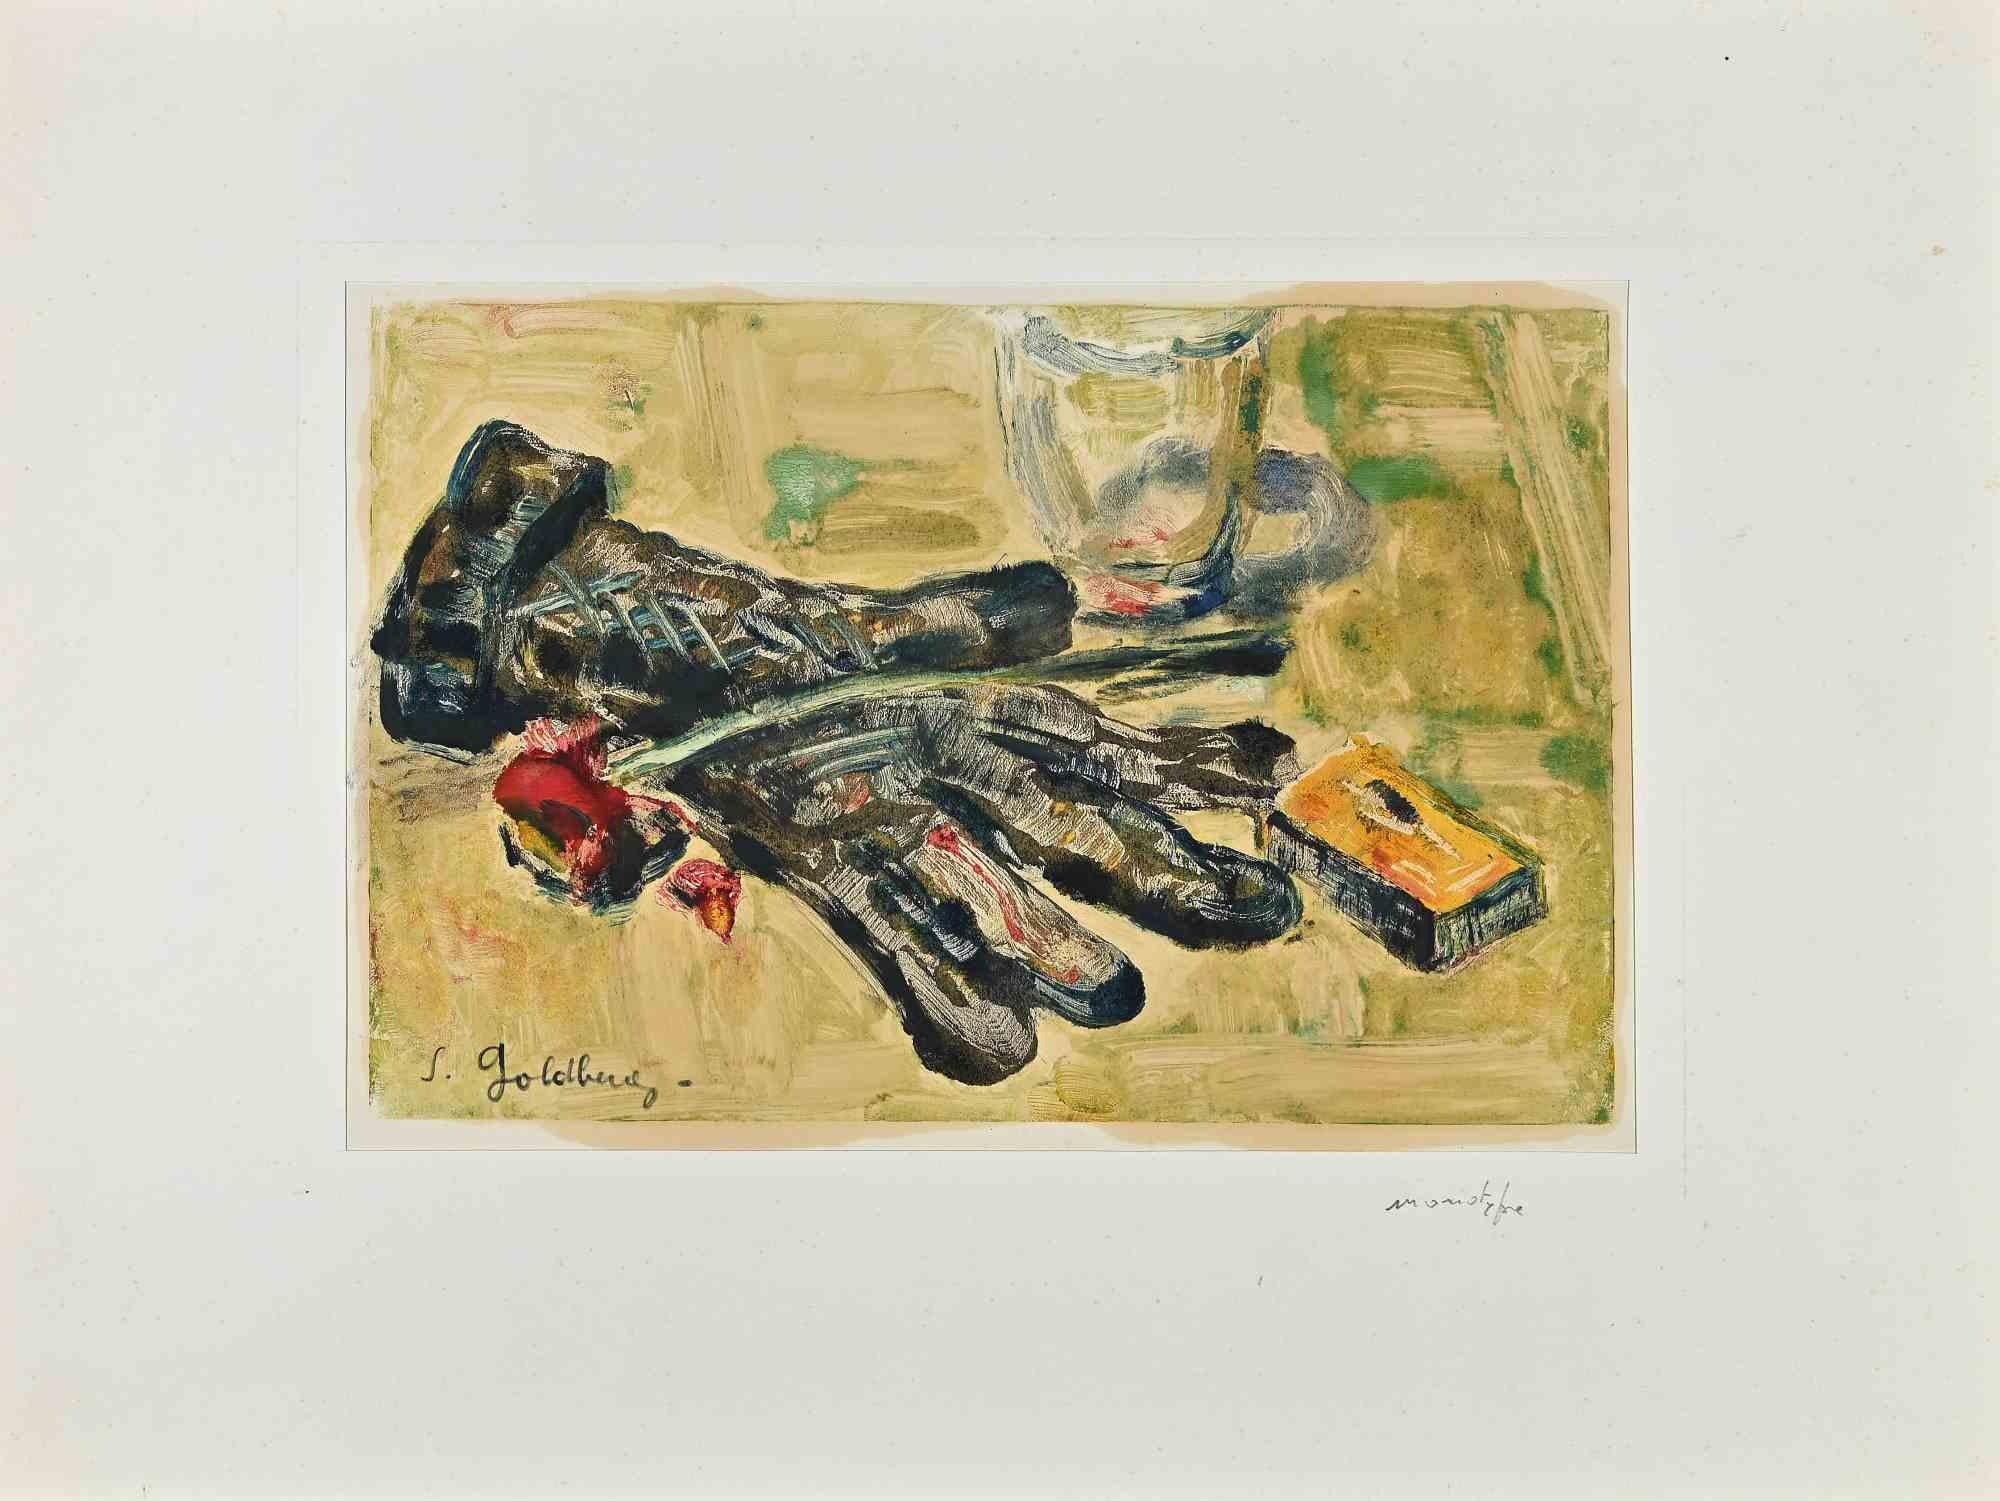 Still Life With Glove est une impression monotype réalisée par Simon Goldberg (1916-2002).

Bon état sur un papier jauni, inclus un passe-partout en carton (32x43 cm).

Signé à la main par l'artiste dans le coin inférieur gauche.

Simon Goldberg